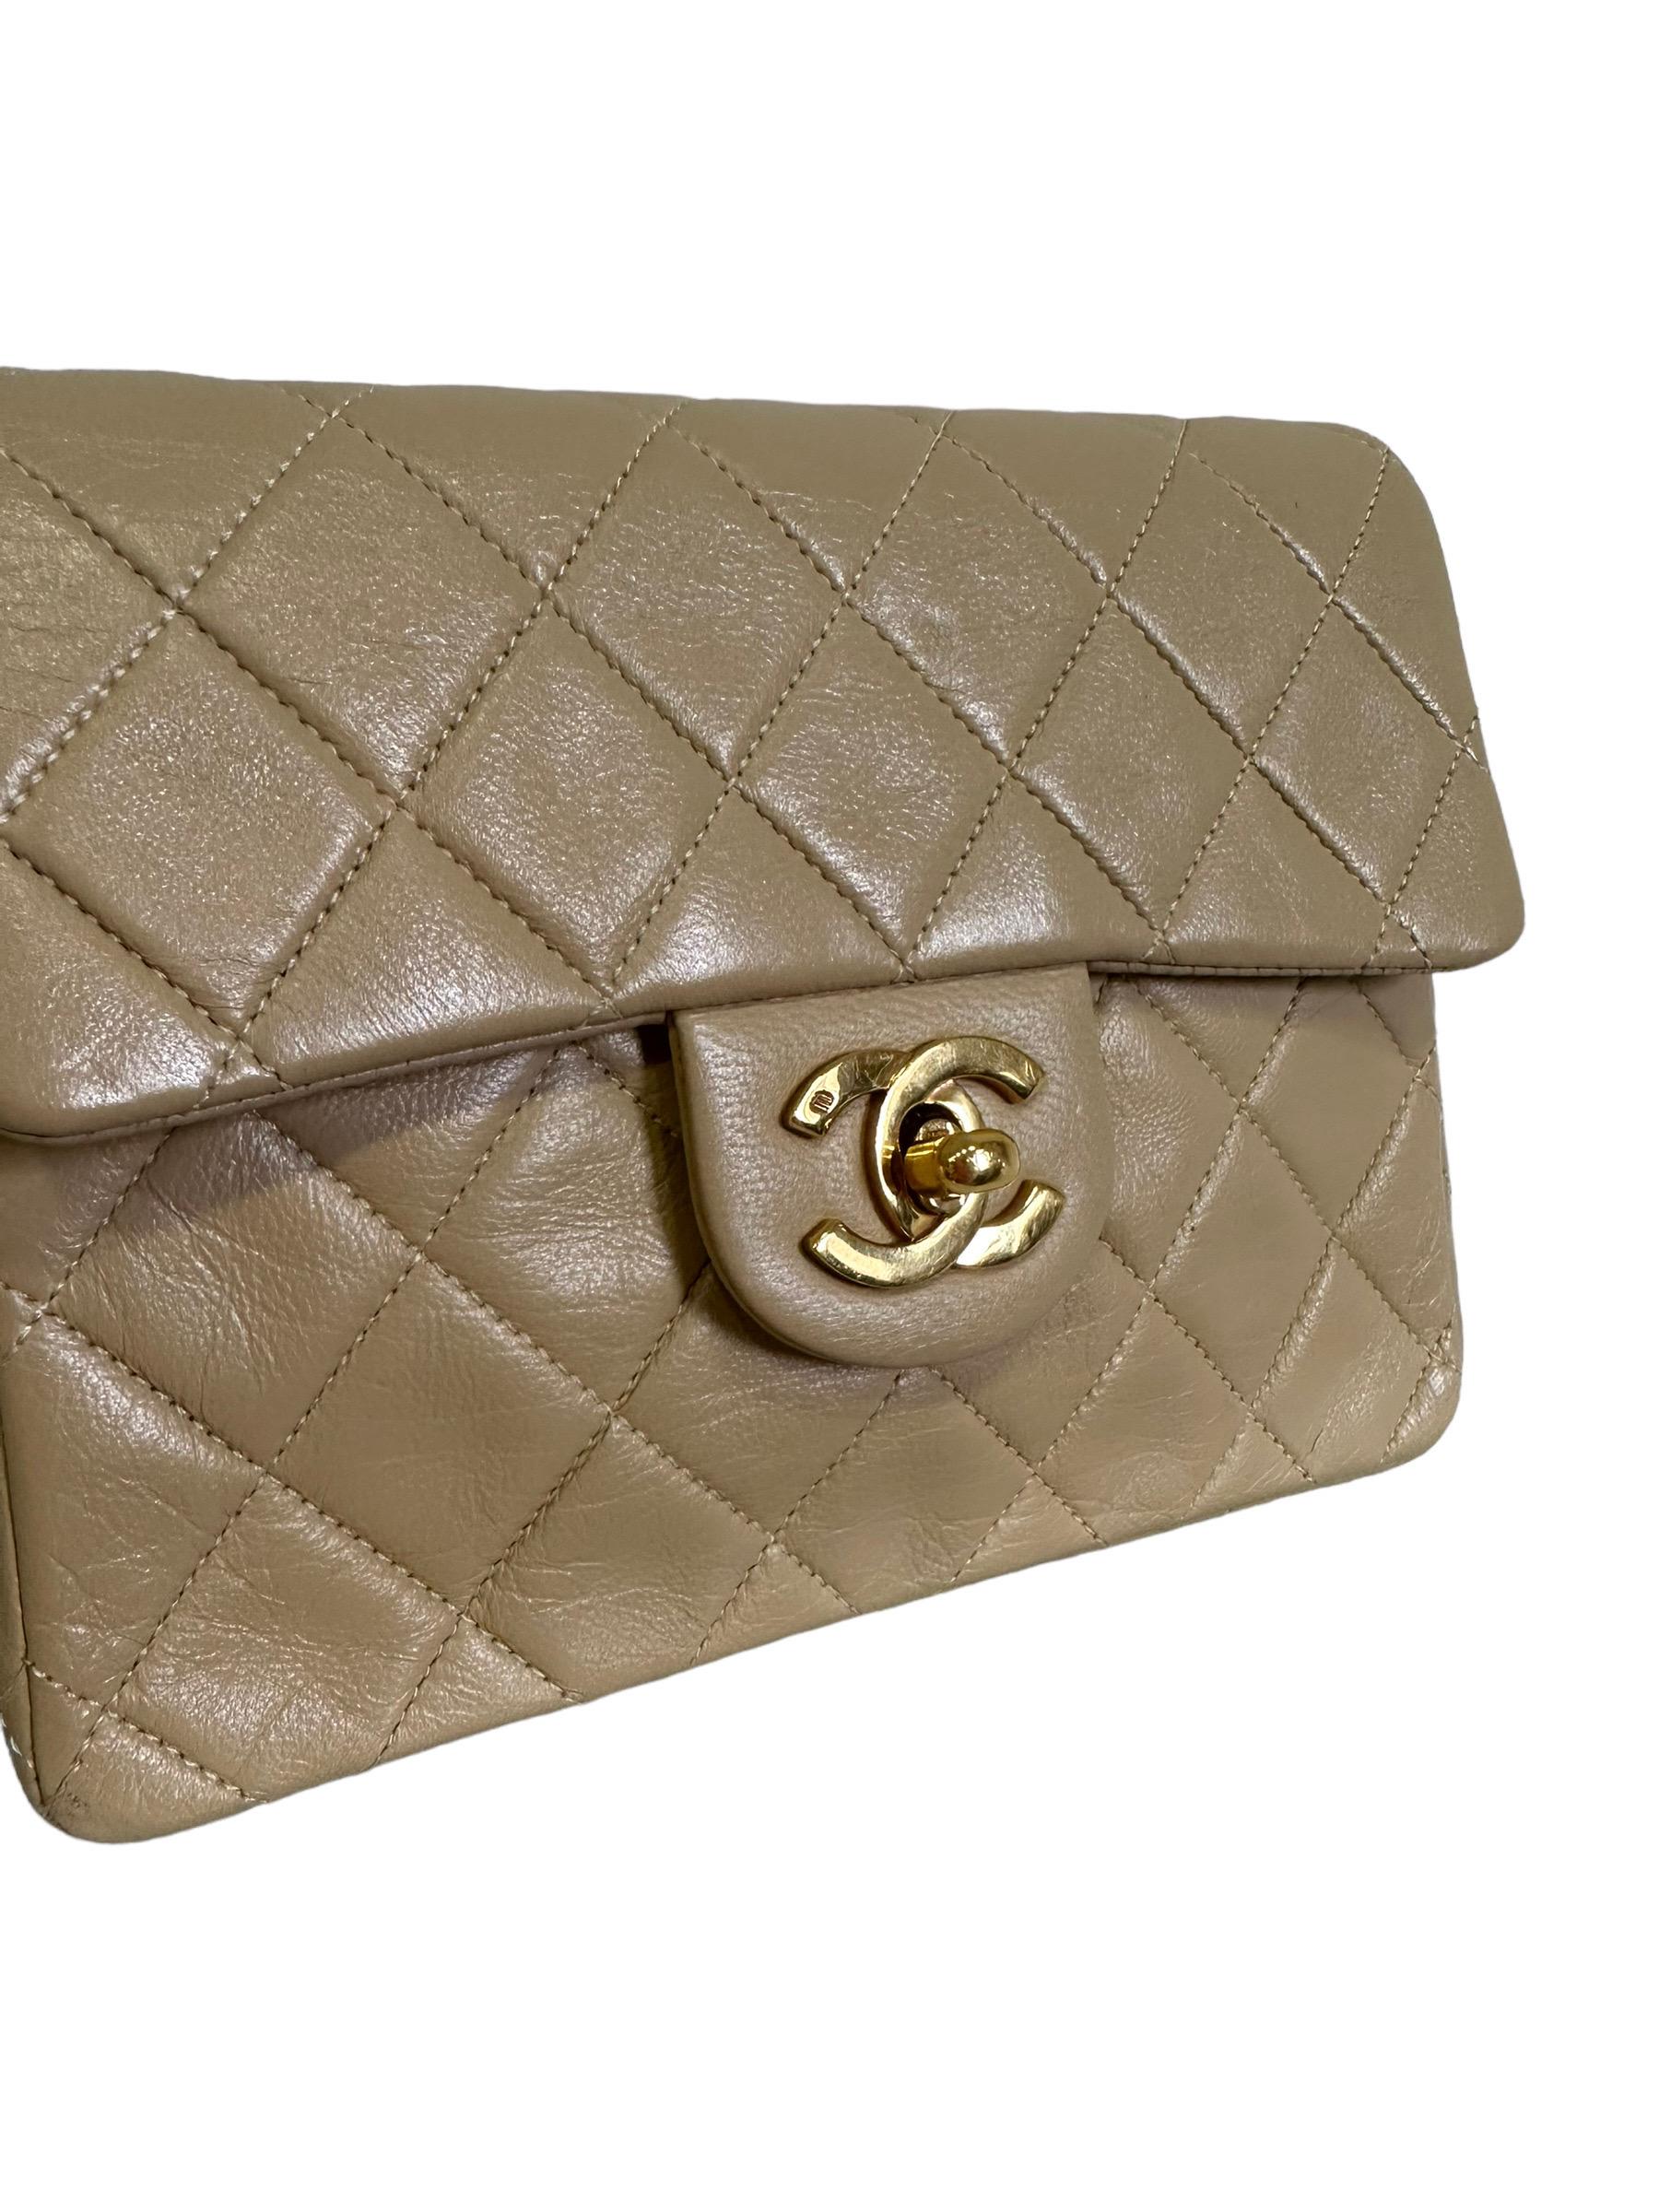 Chanel Umhängetasche, Vintage Mini Flap Modell, aus beigem Leder mit goldener Hardware. Ausgestattet mit einer Klappe mit Drehverschluss mit CC-Logo, innen mit beigem Leder gefüttert, geräumig für das Wesentliche. Ausgestattet mit einem